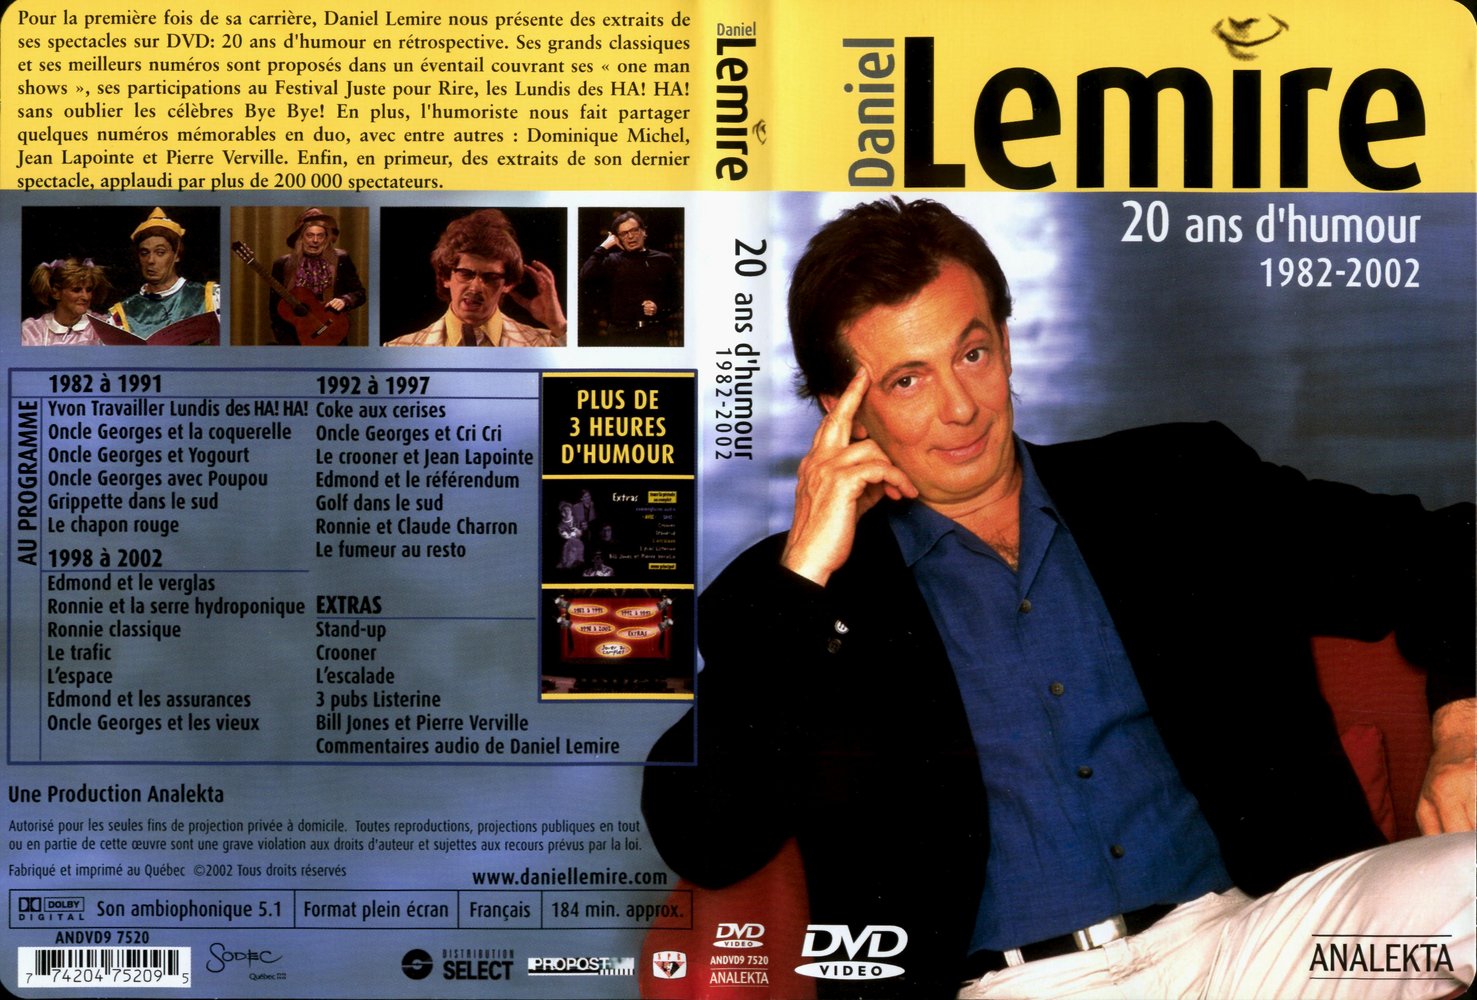 Jaquette DVD Daniel Lemire 20 ans d